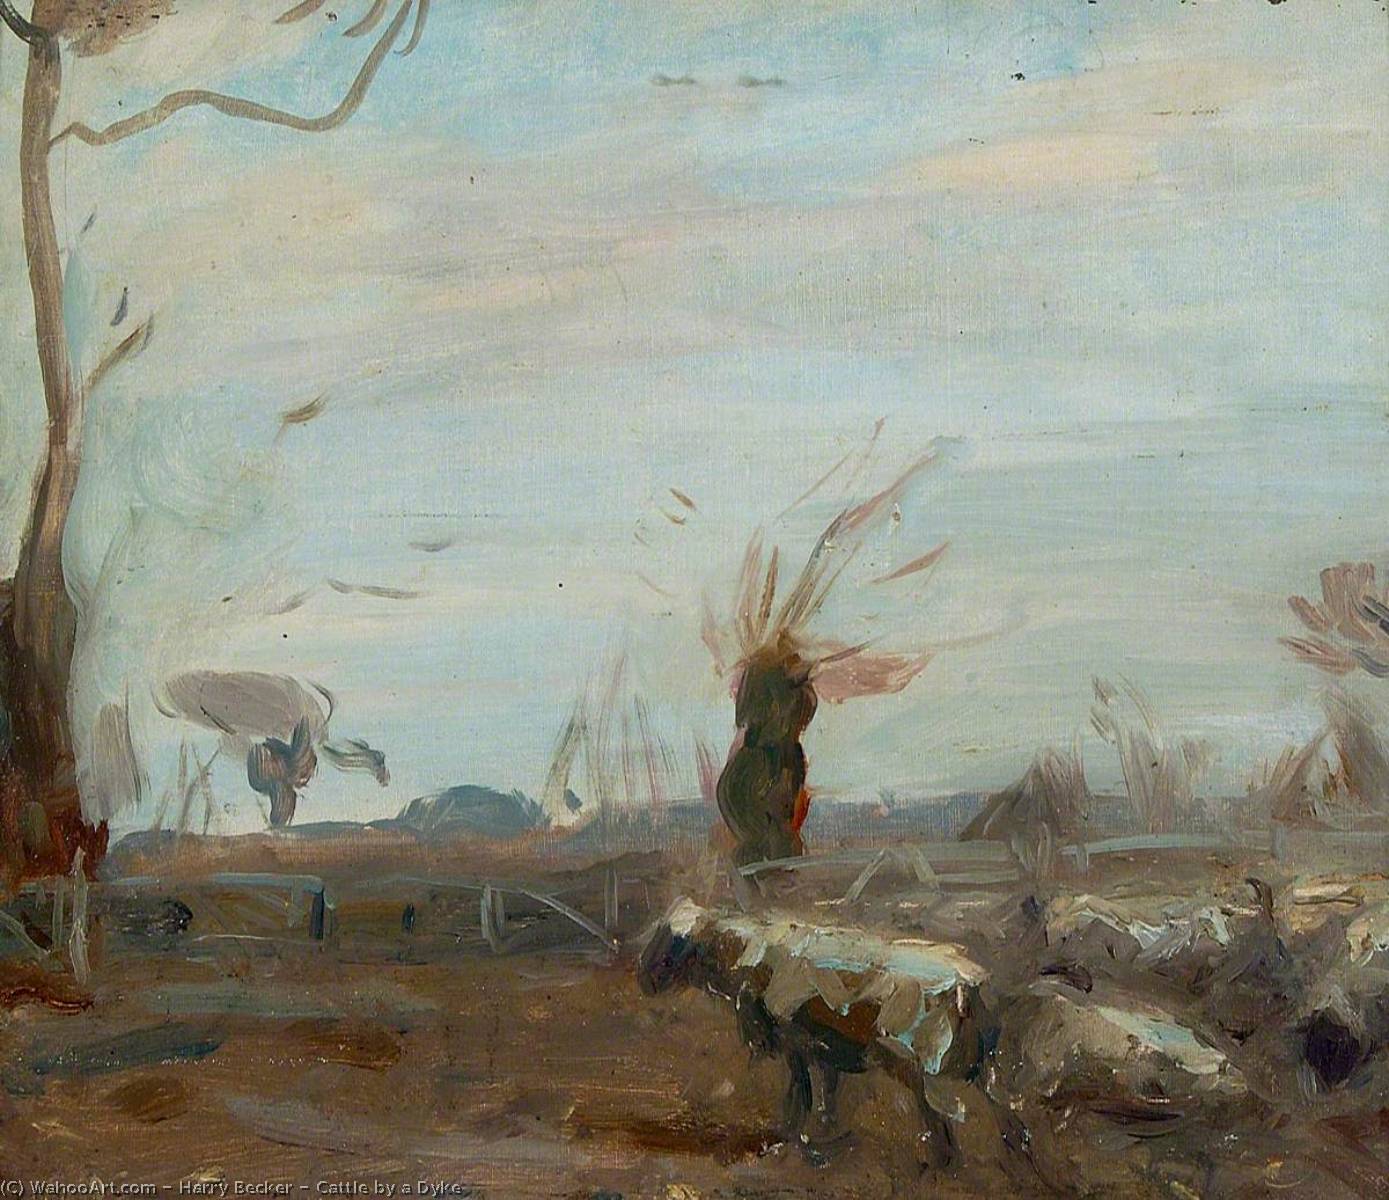 WikiOO.org - Encyclopedia of Fine Arts - Lukisan, Artwork Harry Becker - Cattle by a Dyke